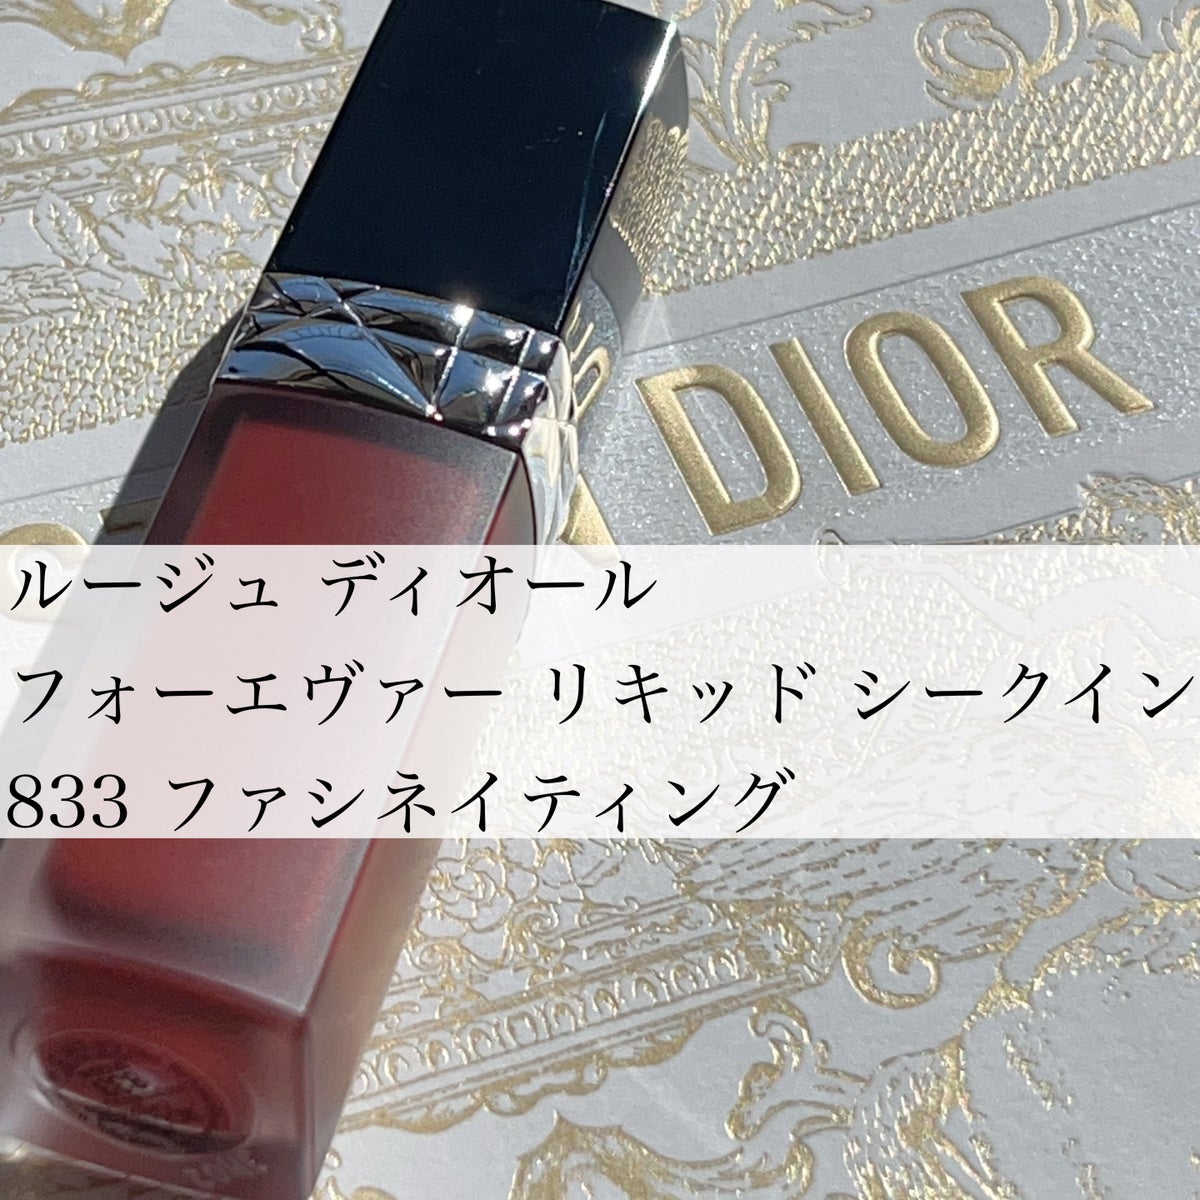 新商品発売中 Christian Dior ルージュディオール 833 ファシネ